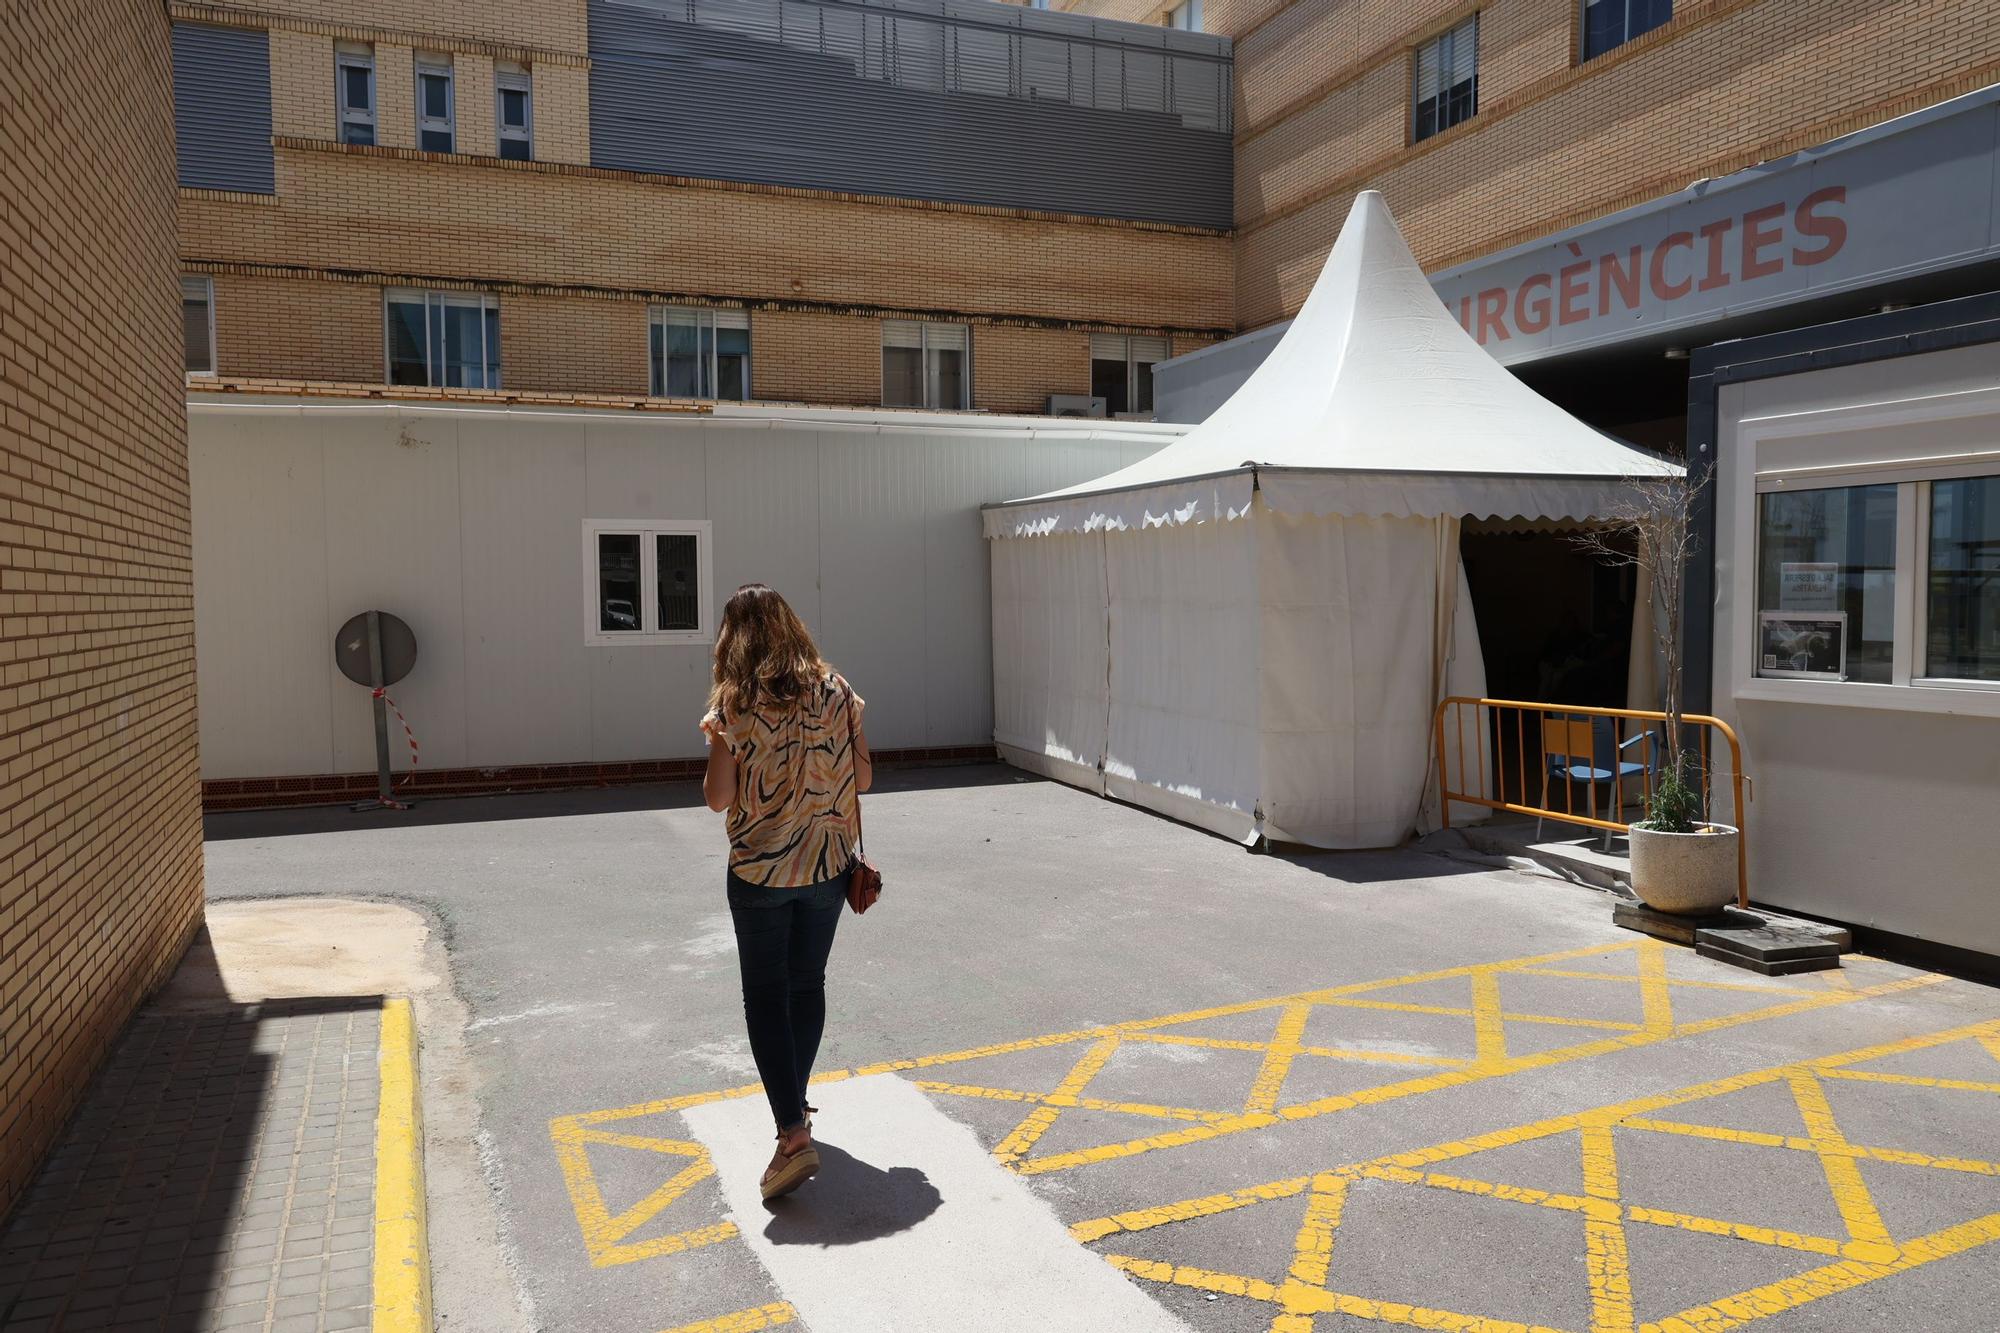 La ampliación de las Urgencias en el Hospital General de Castelló está en peligro y a expensas de una negociación. Autor: Gabriel Utiel